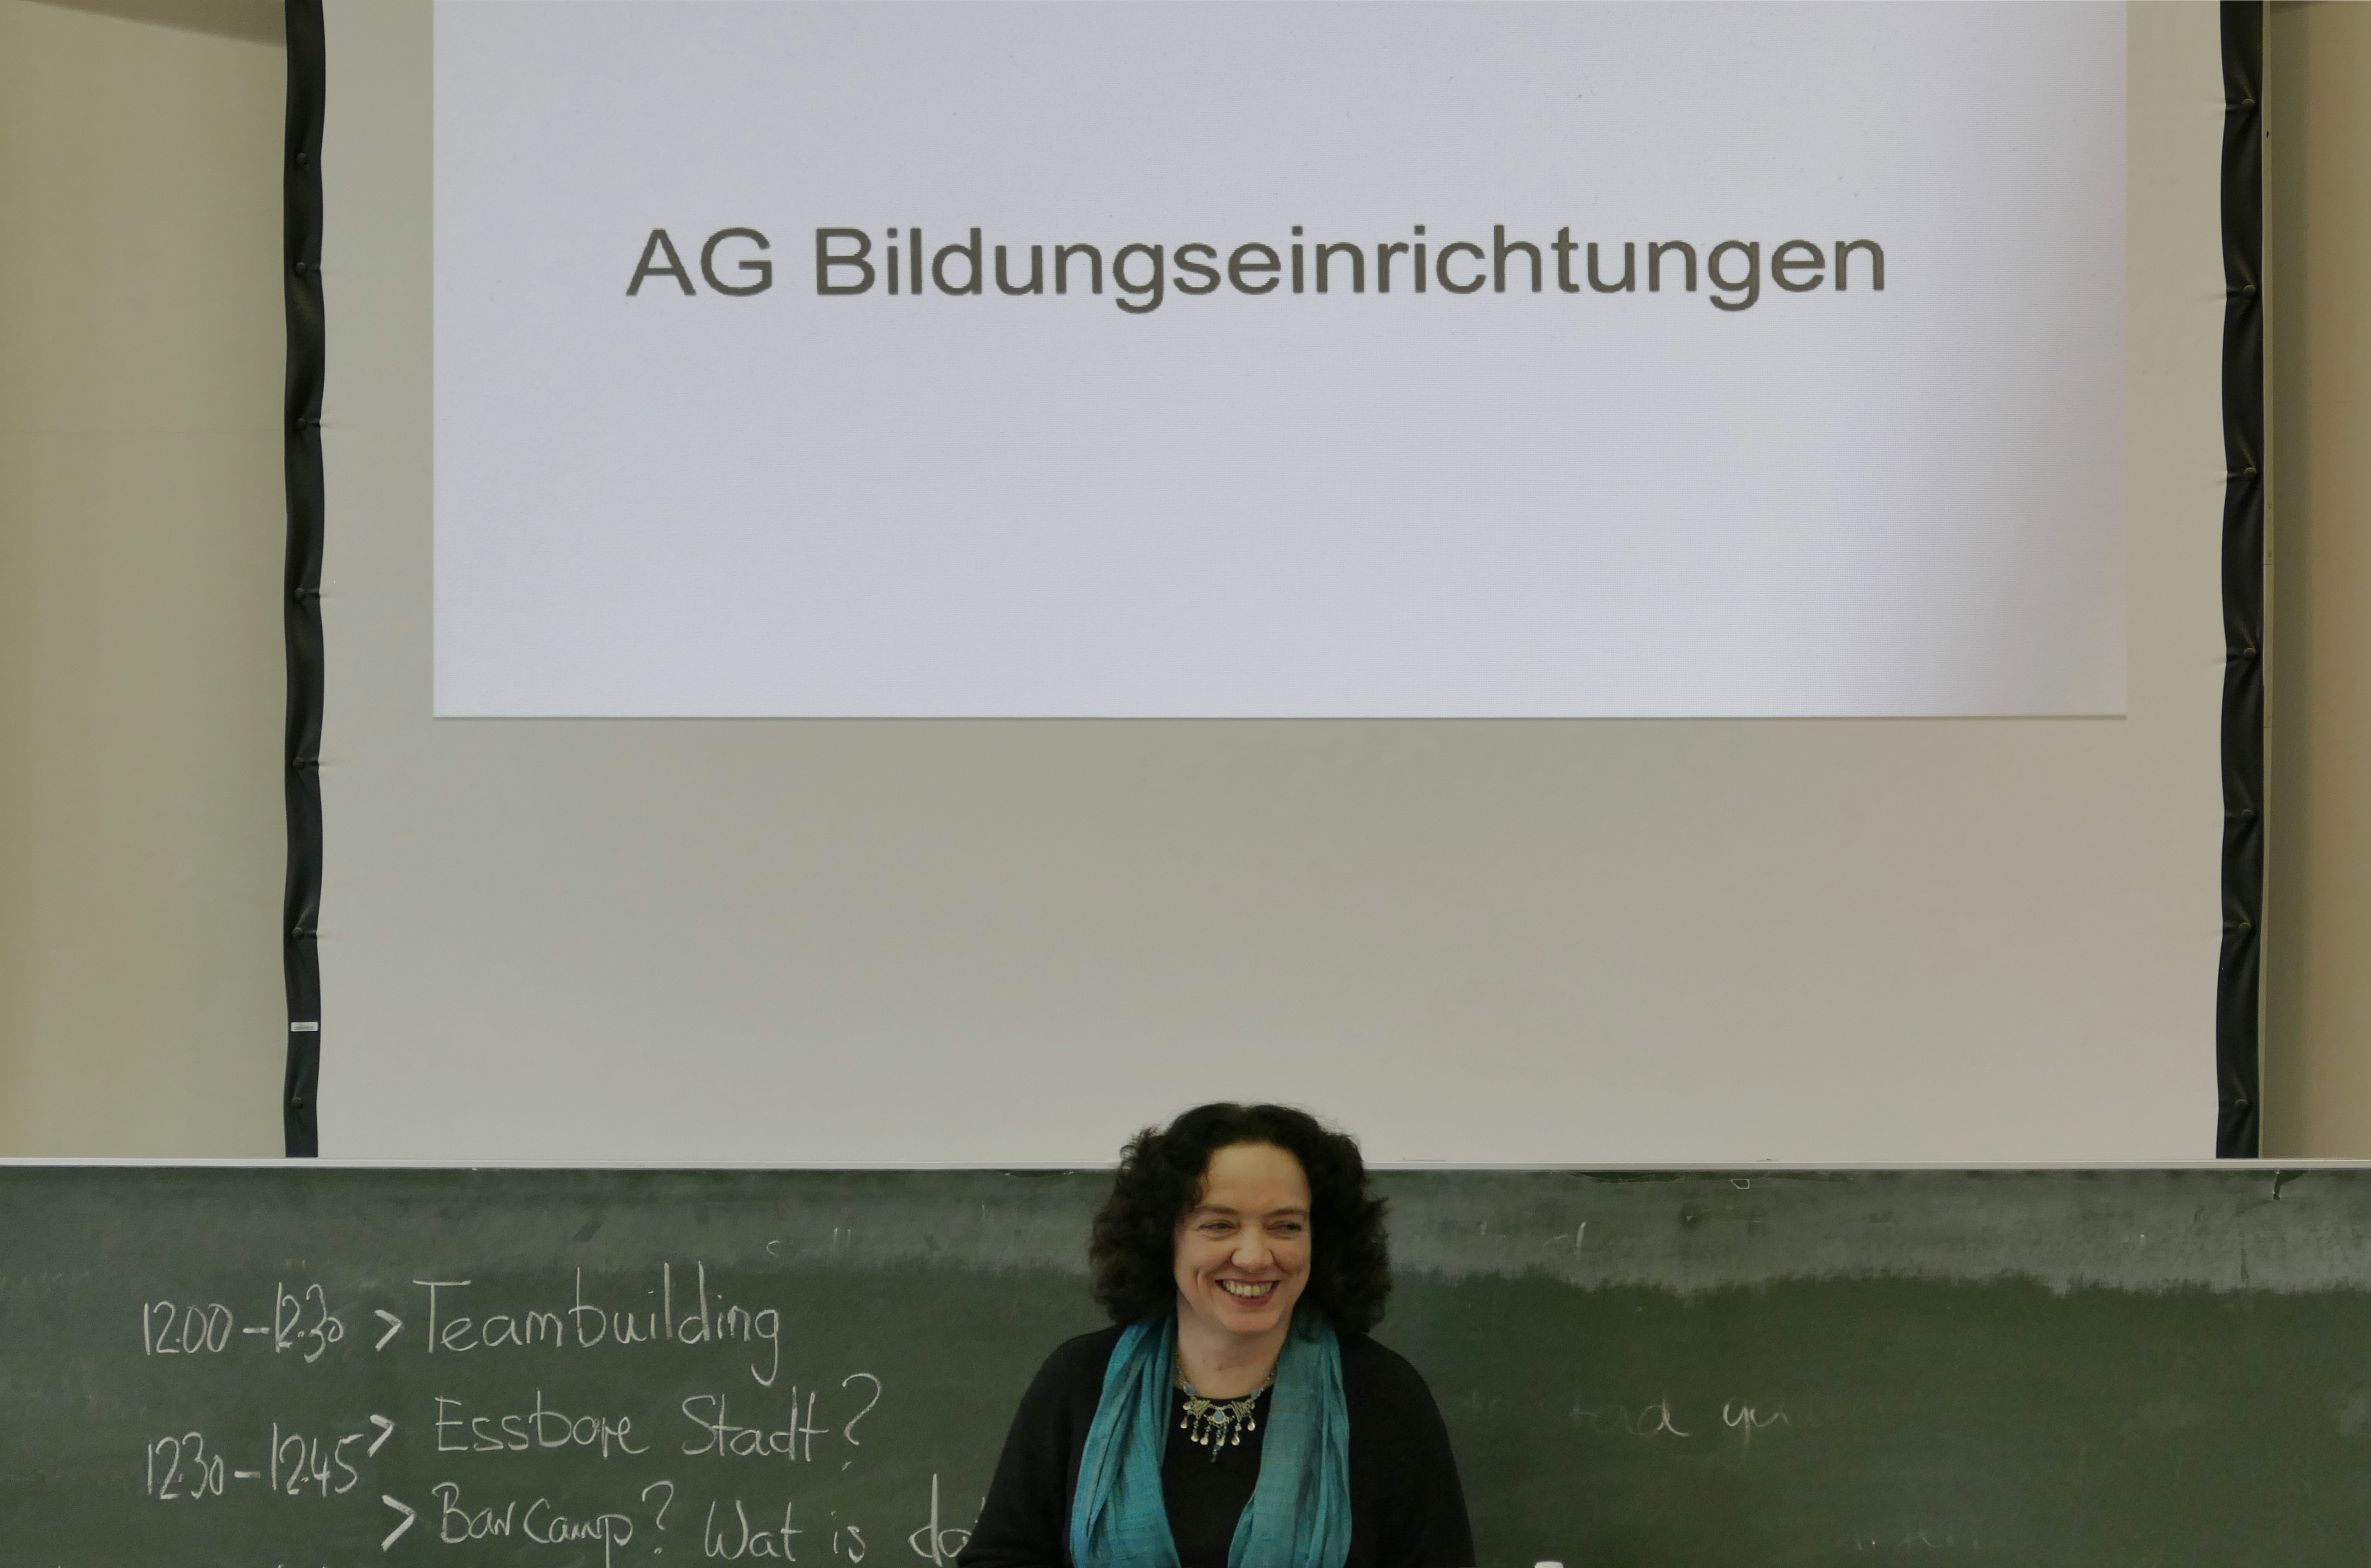 Sprachspinat.de | Sonja Eisenbeiß moderiert die AG "Bildungseinrichtungen" beim 2. Gipfel zur "essbaren Stadt Köln"